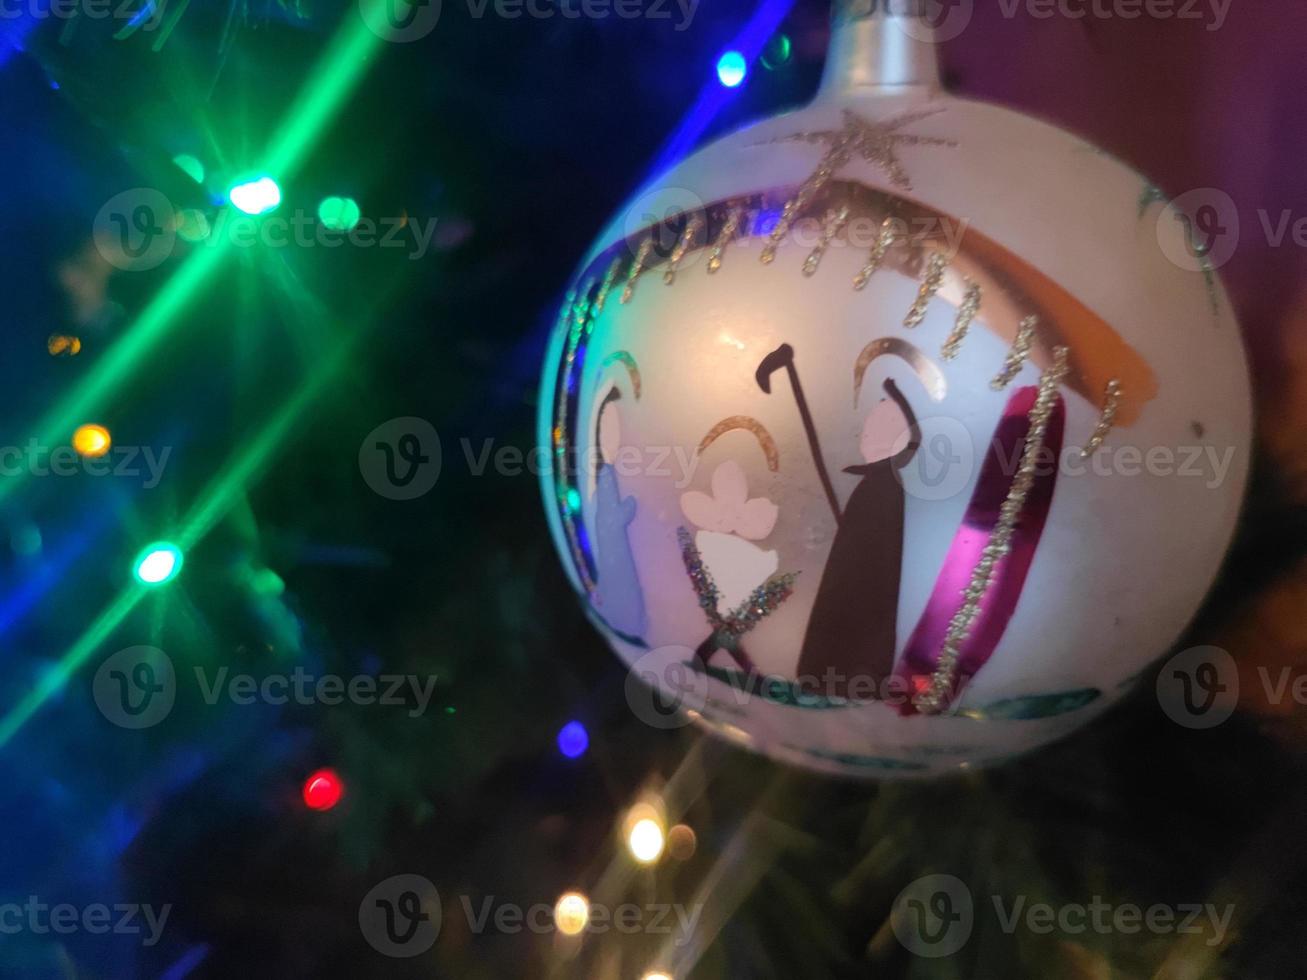 bola de natal de vidro feita à mão no detalhe da árvore de natal luzes desfocadas foto